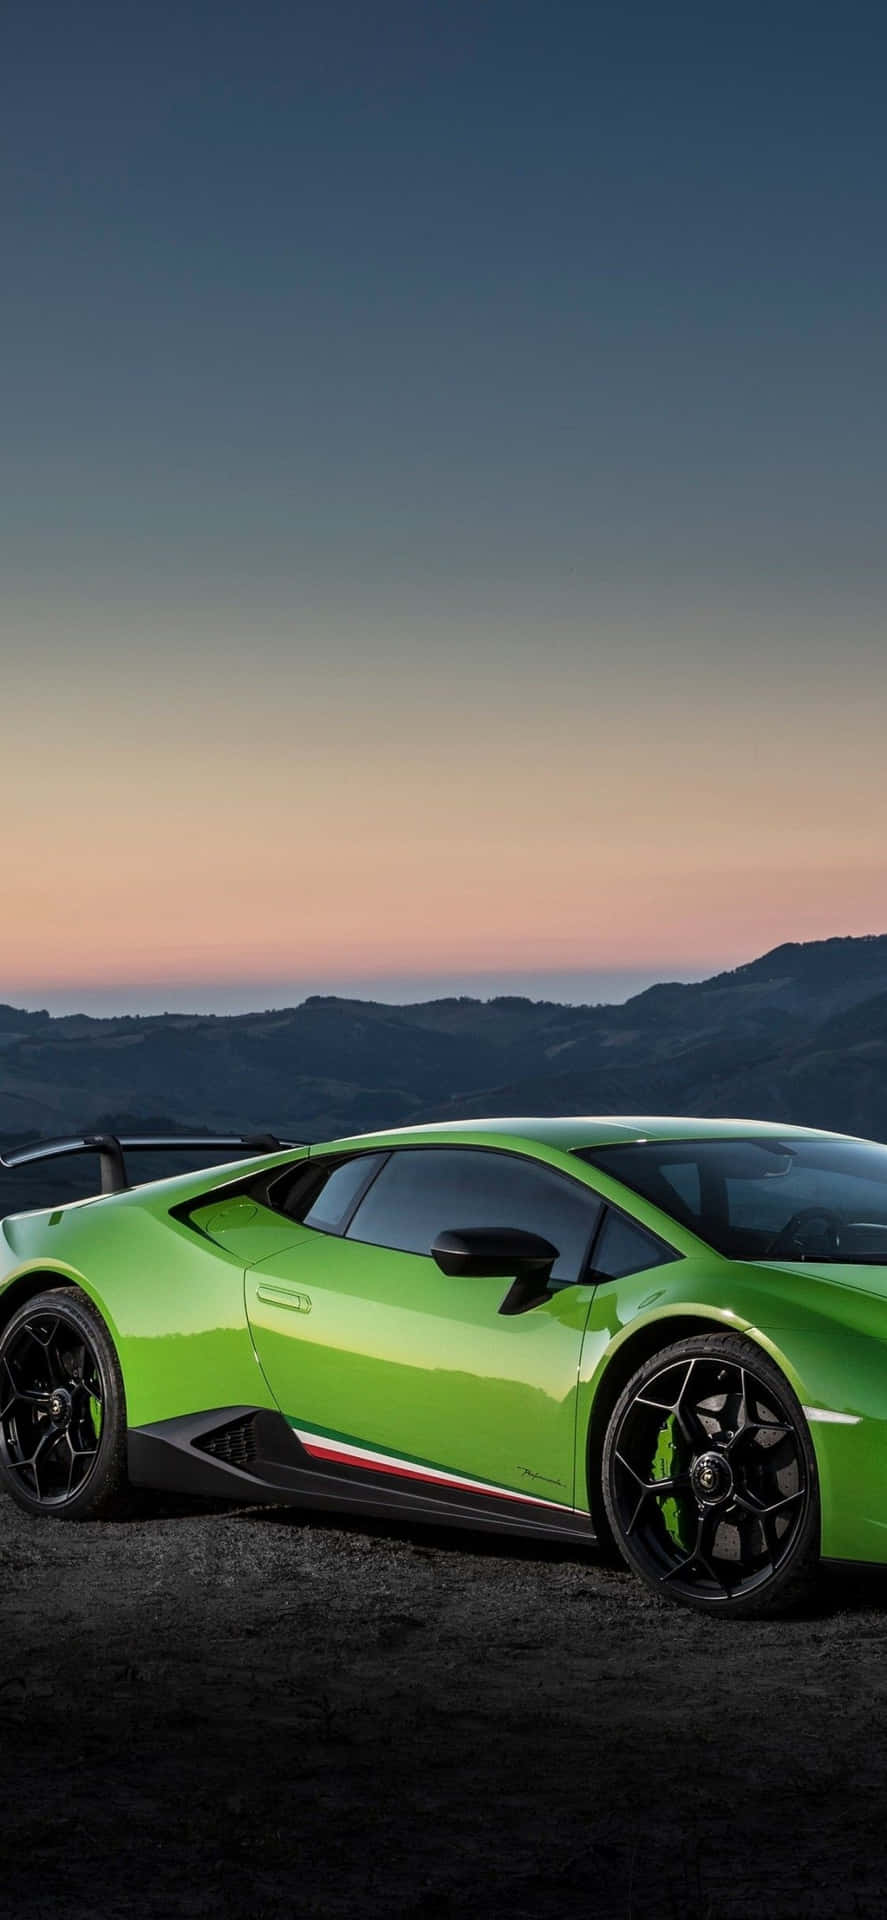 Nyd en tur i en grøn Lamborghini Wallpaper